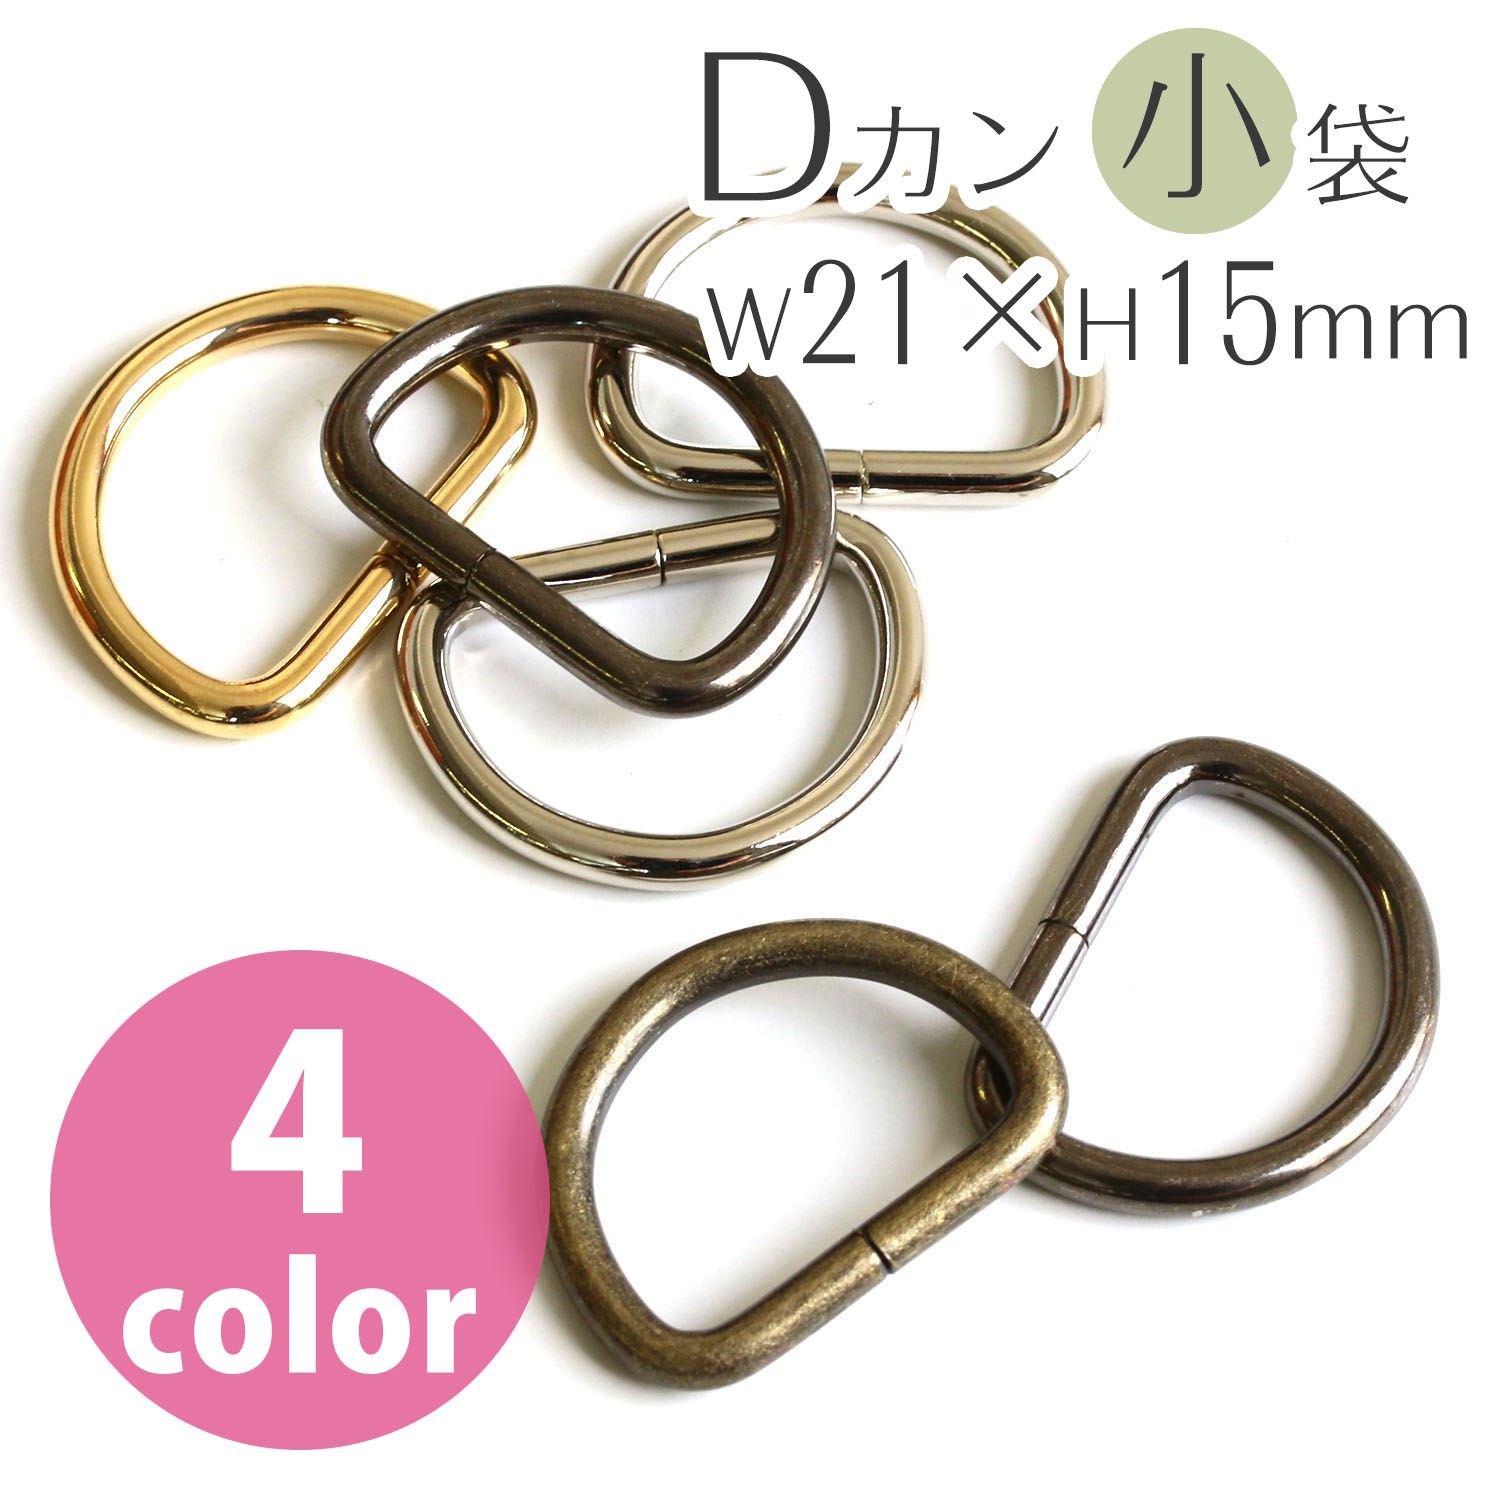 D-Ring 21 x 15mm", diameter 3mm (bag)